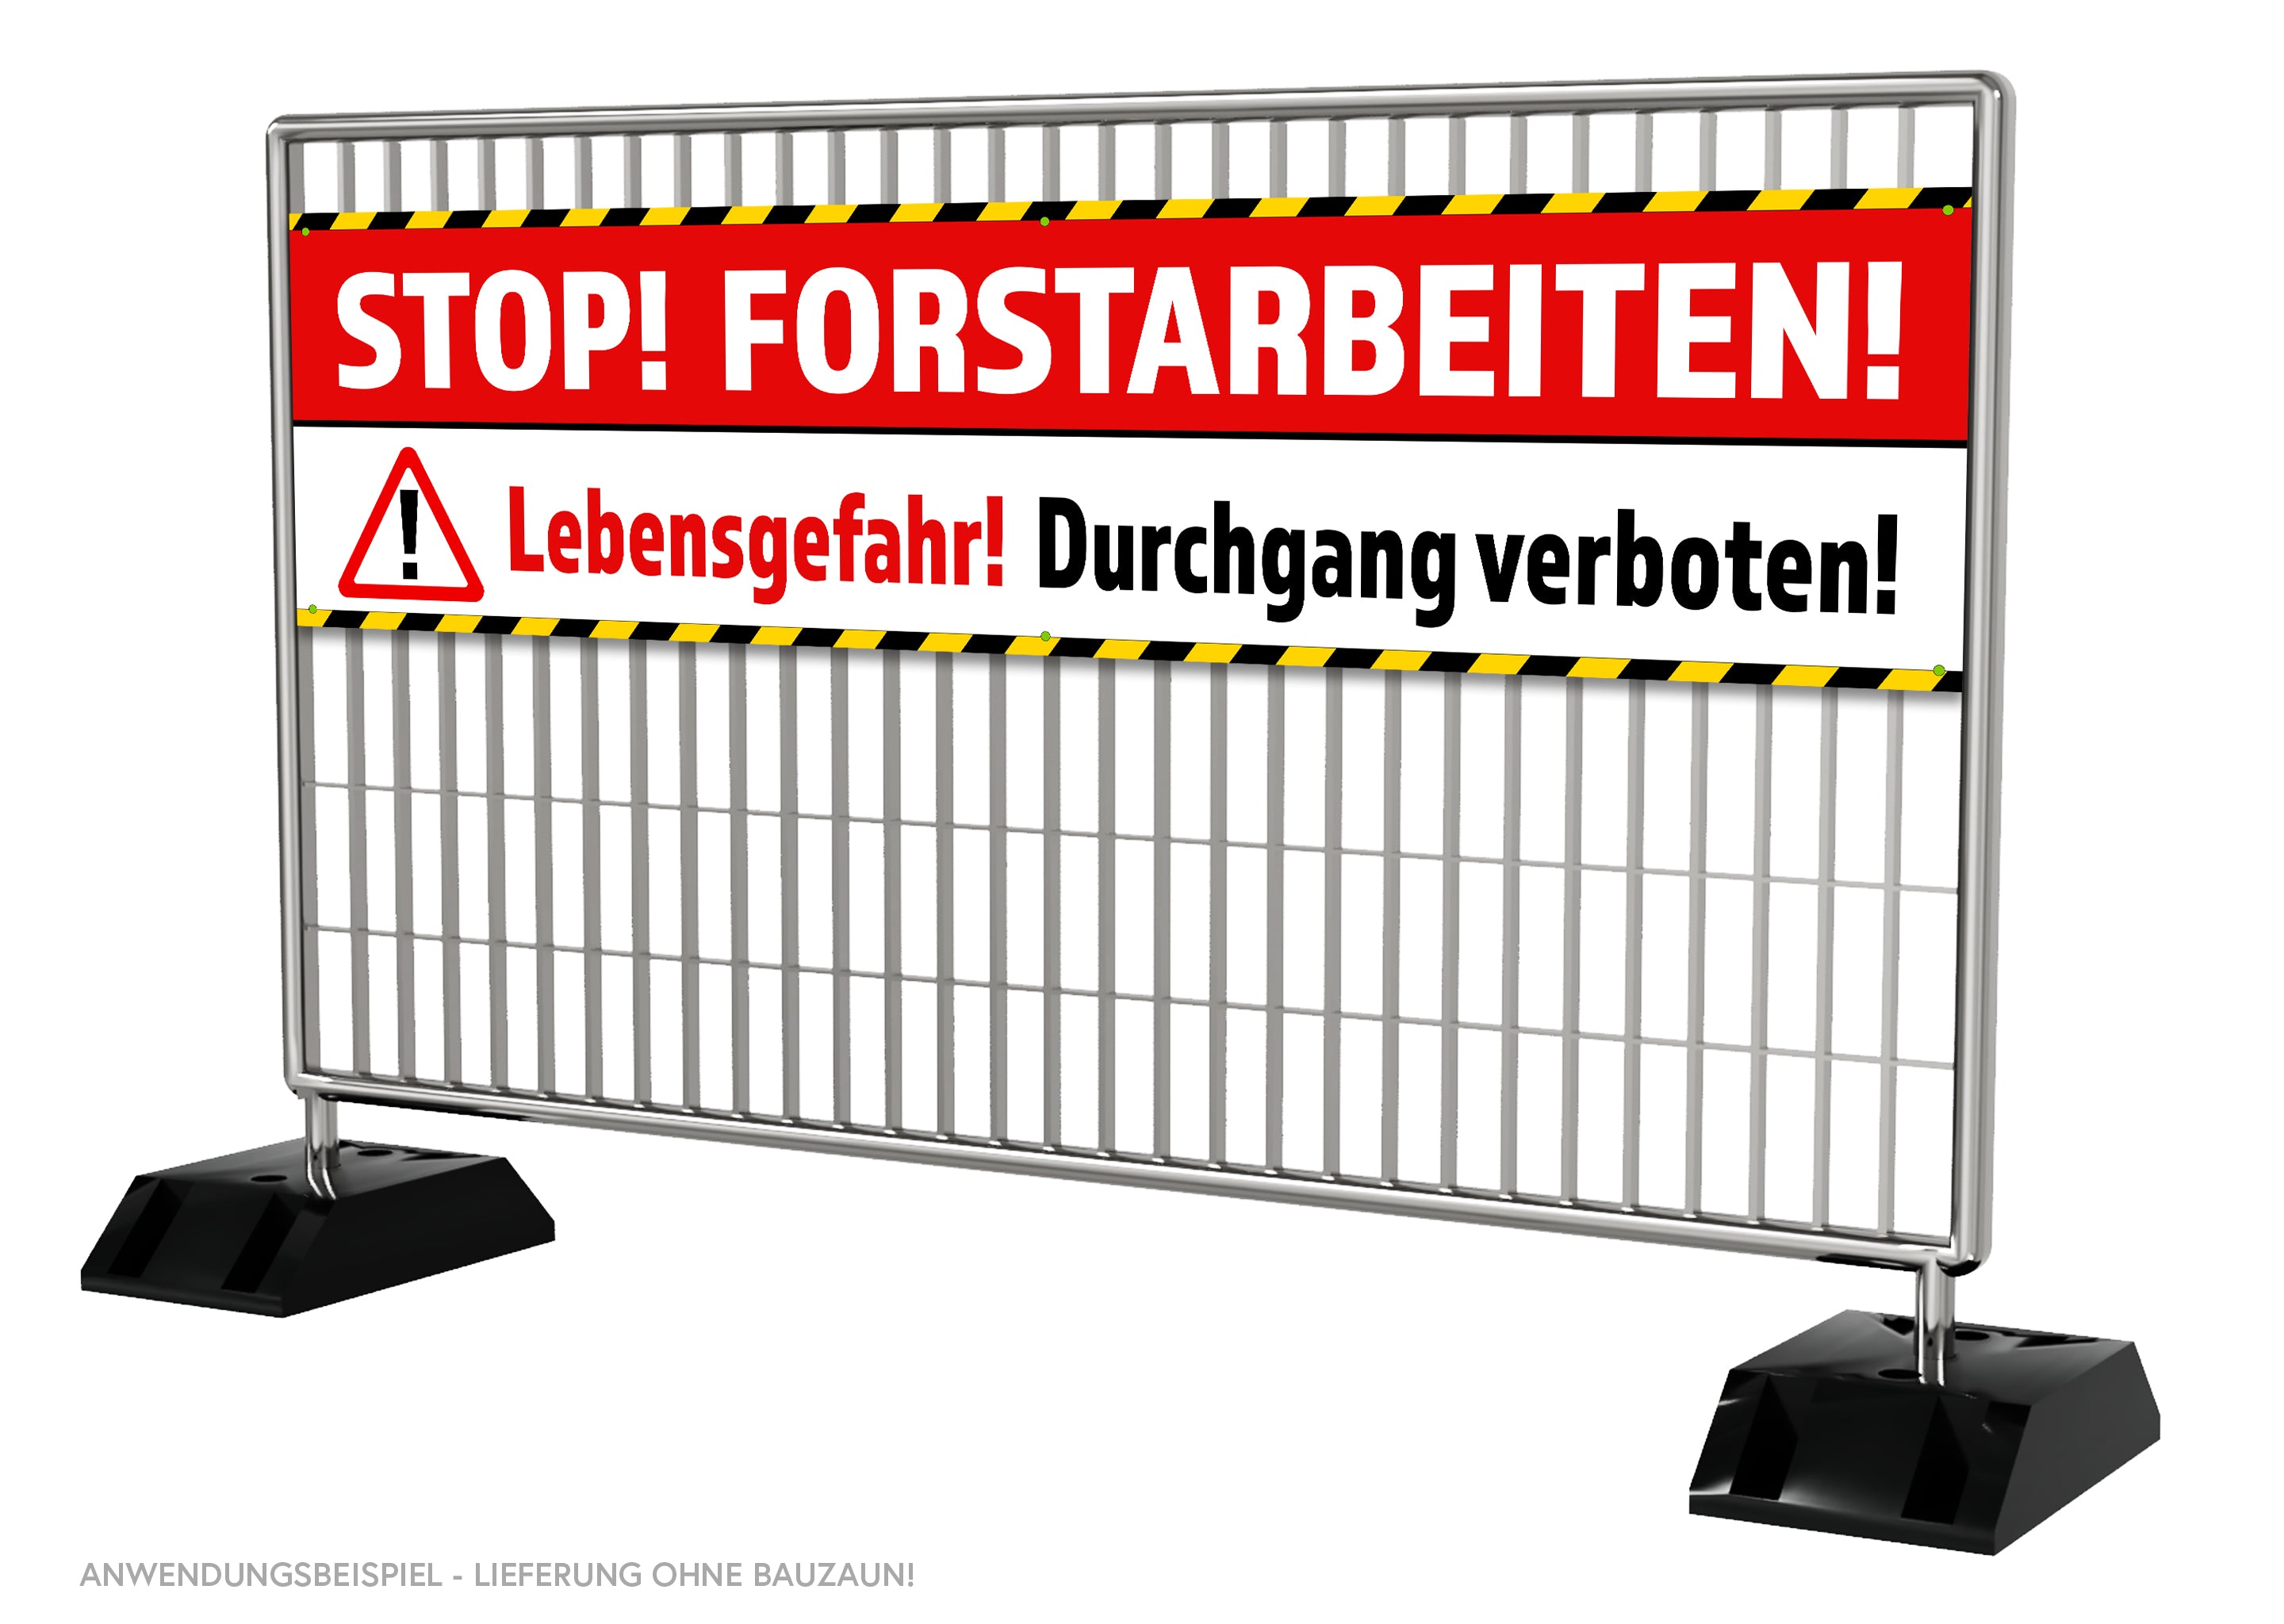 PVC-Banner oder Klebefolie STOP! FORSTARBEITEN-4